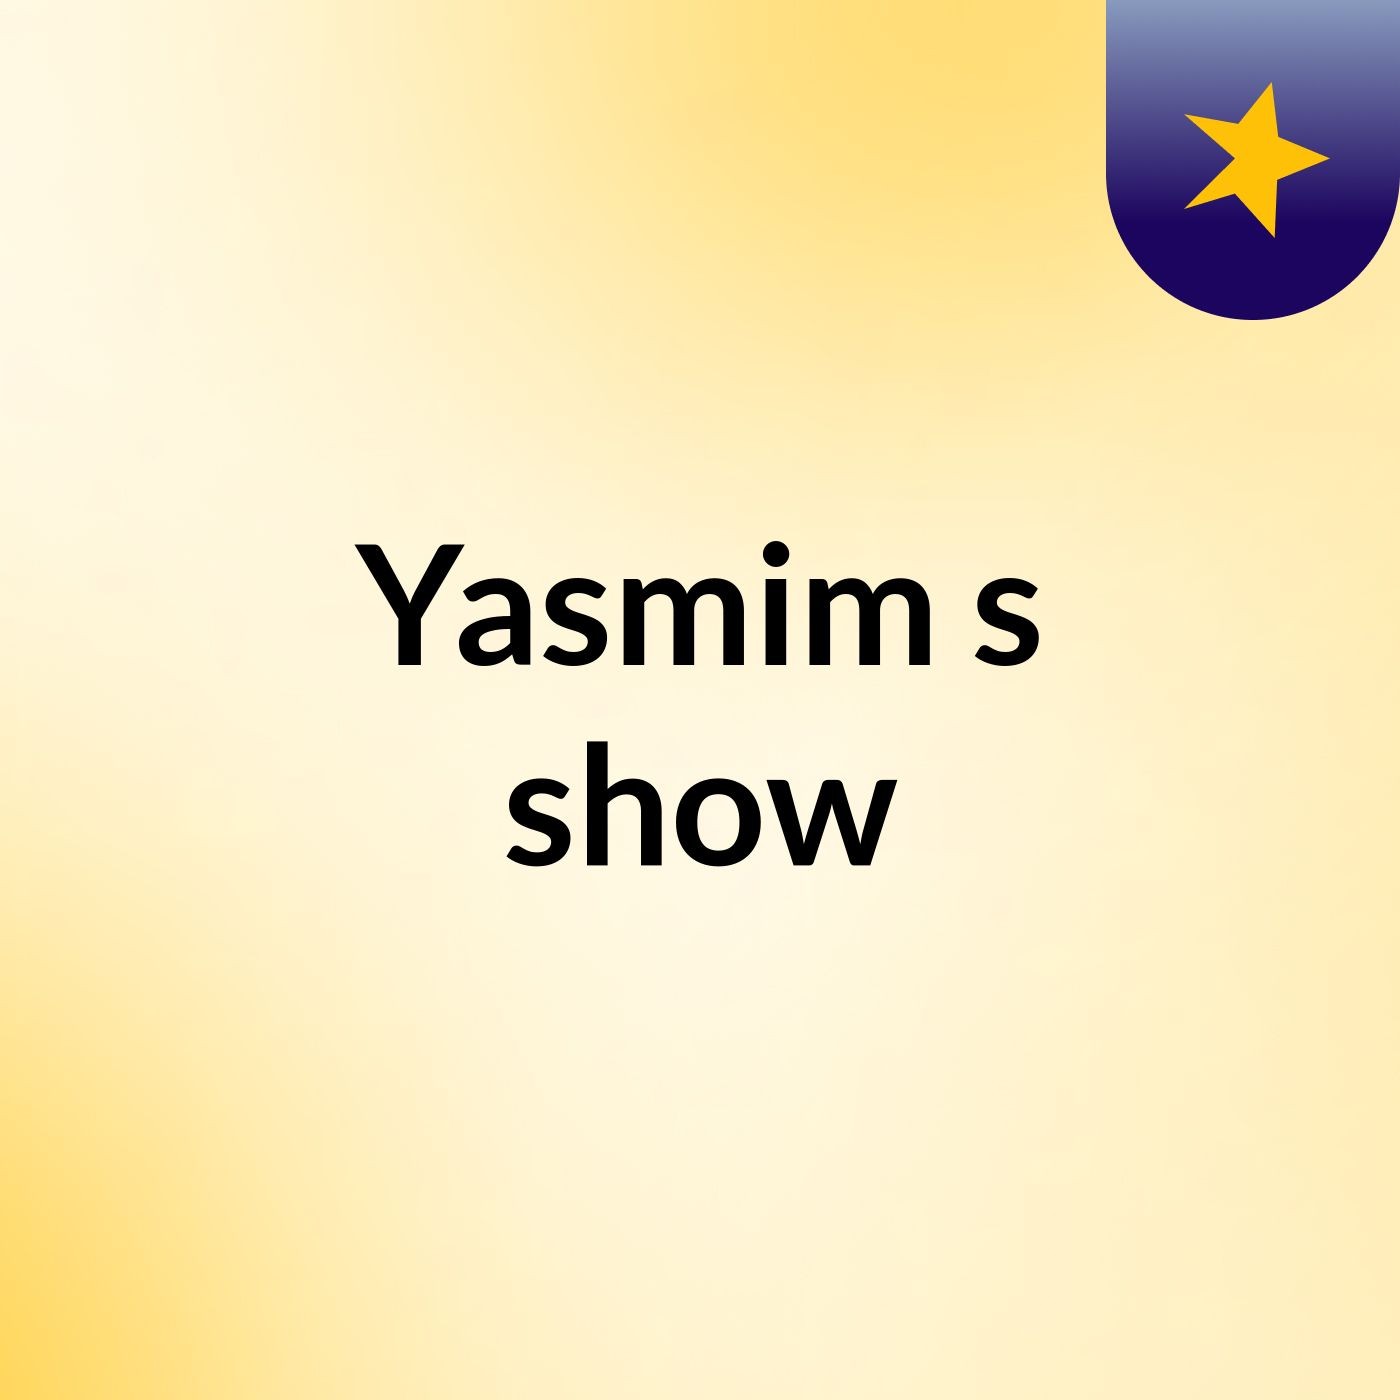 Yasmim's show